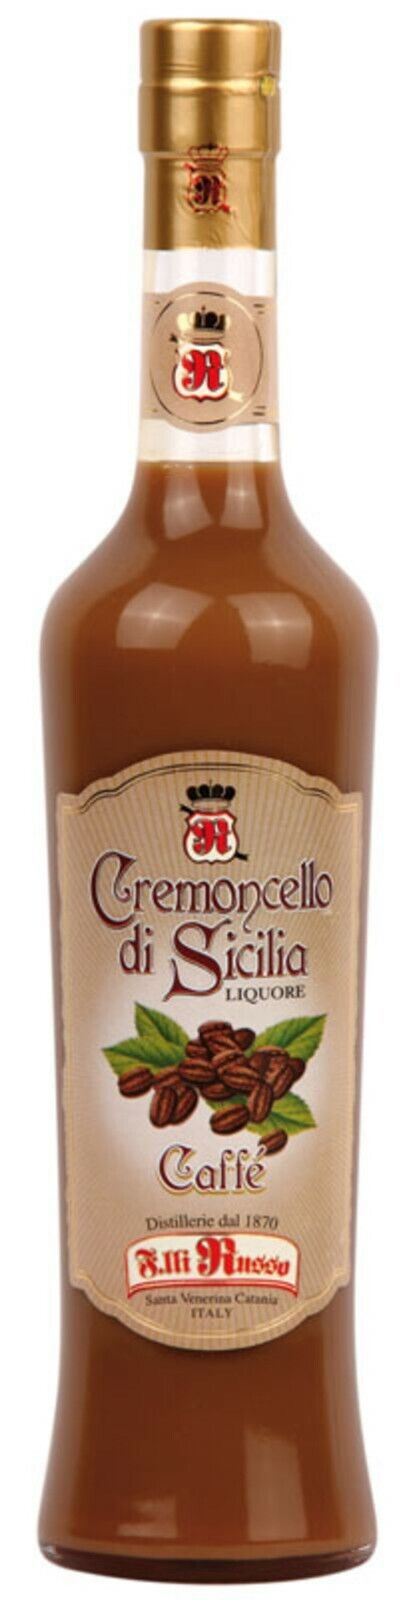 Cremoncello Caff? liquore Russo Siciliano/500 ml